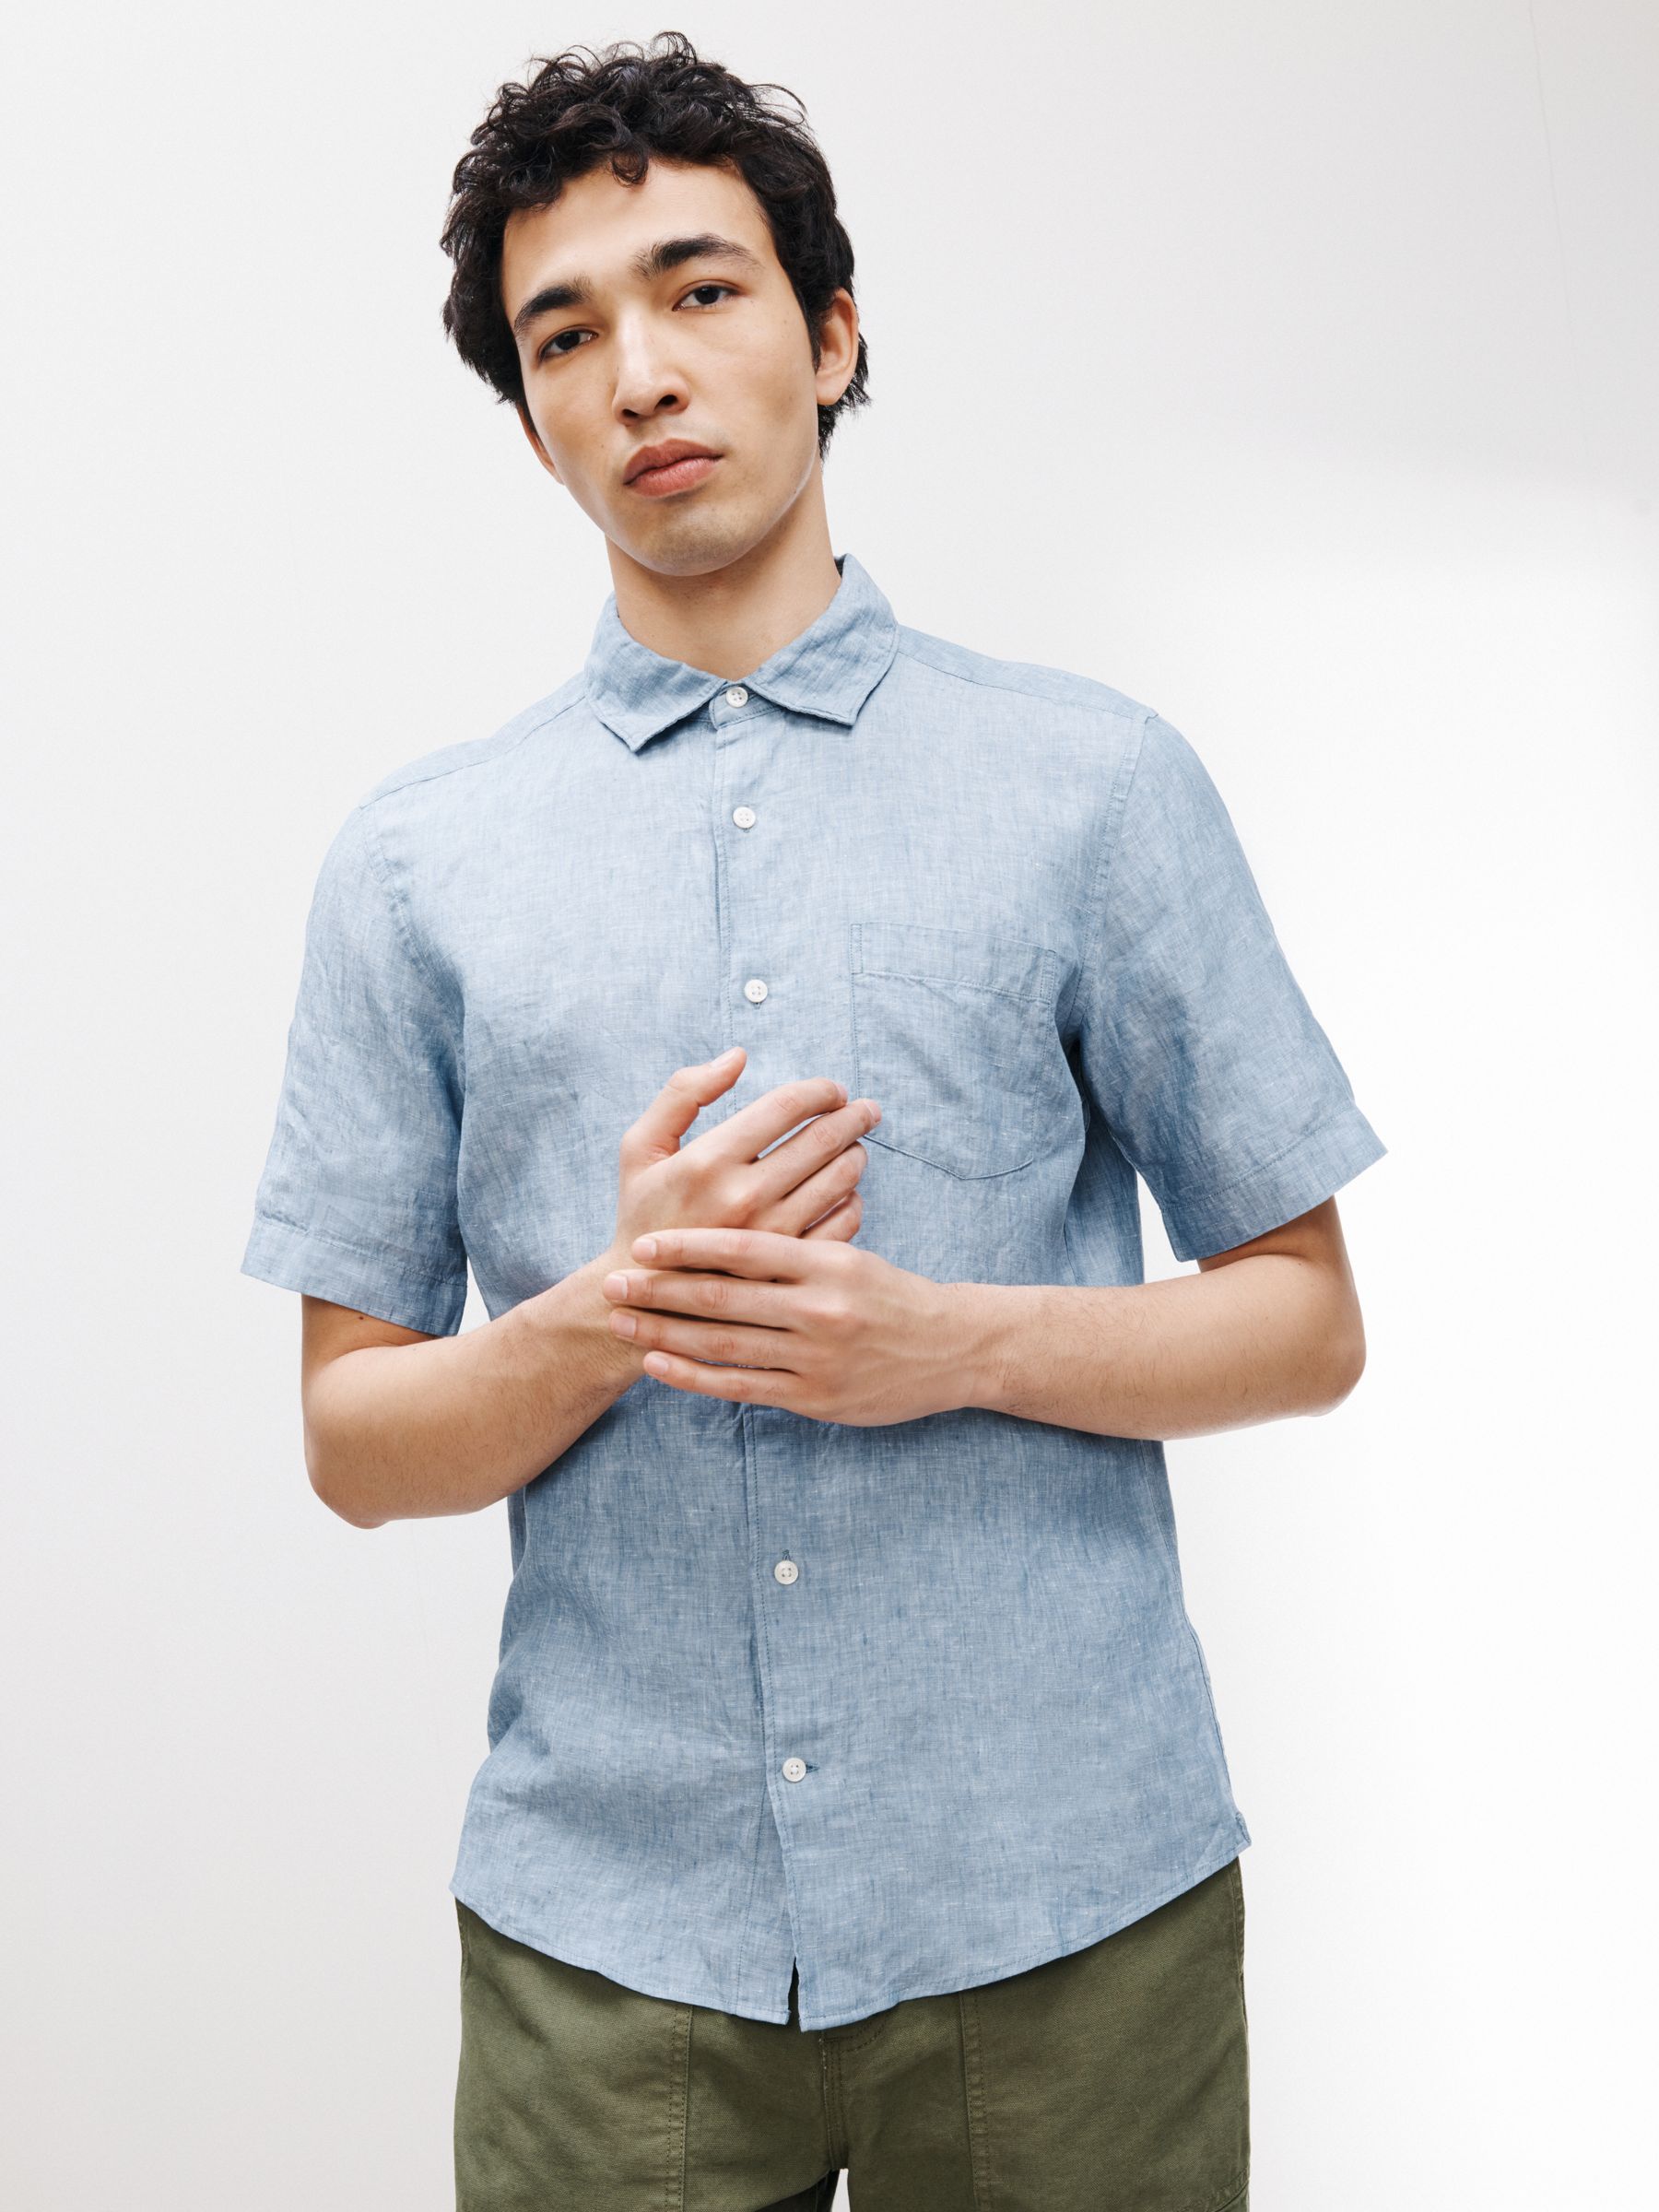 John Lewis Linen Regular Fit Shirt, China Blue, S